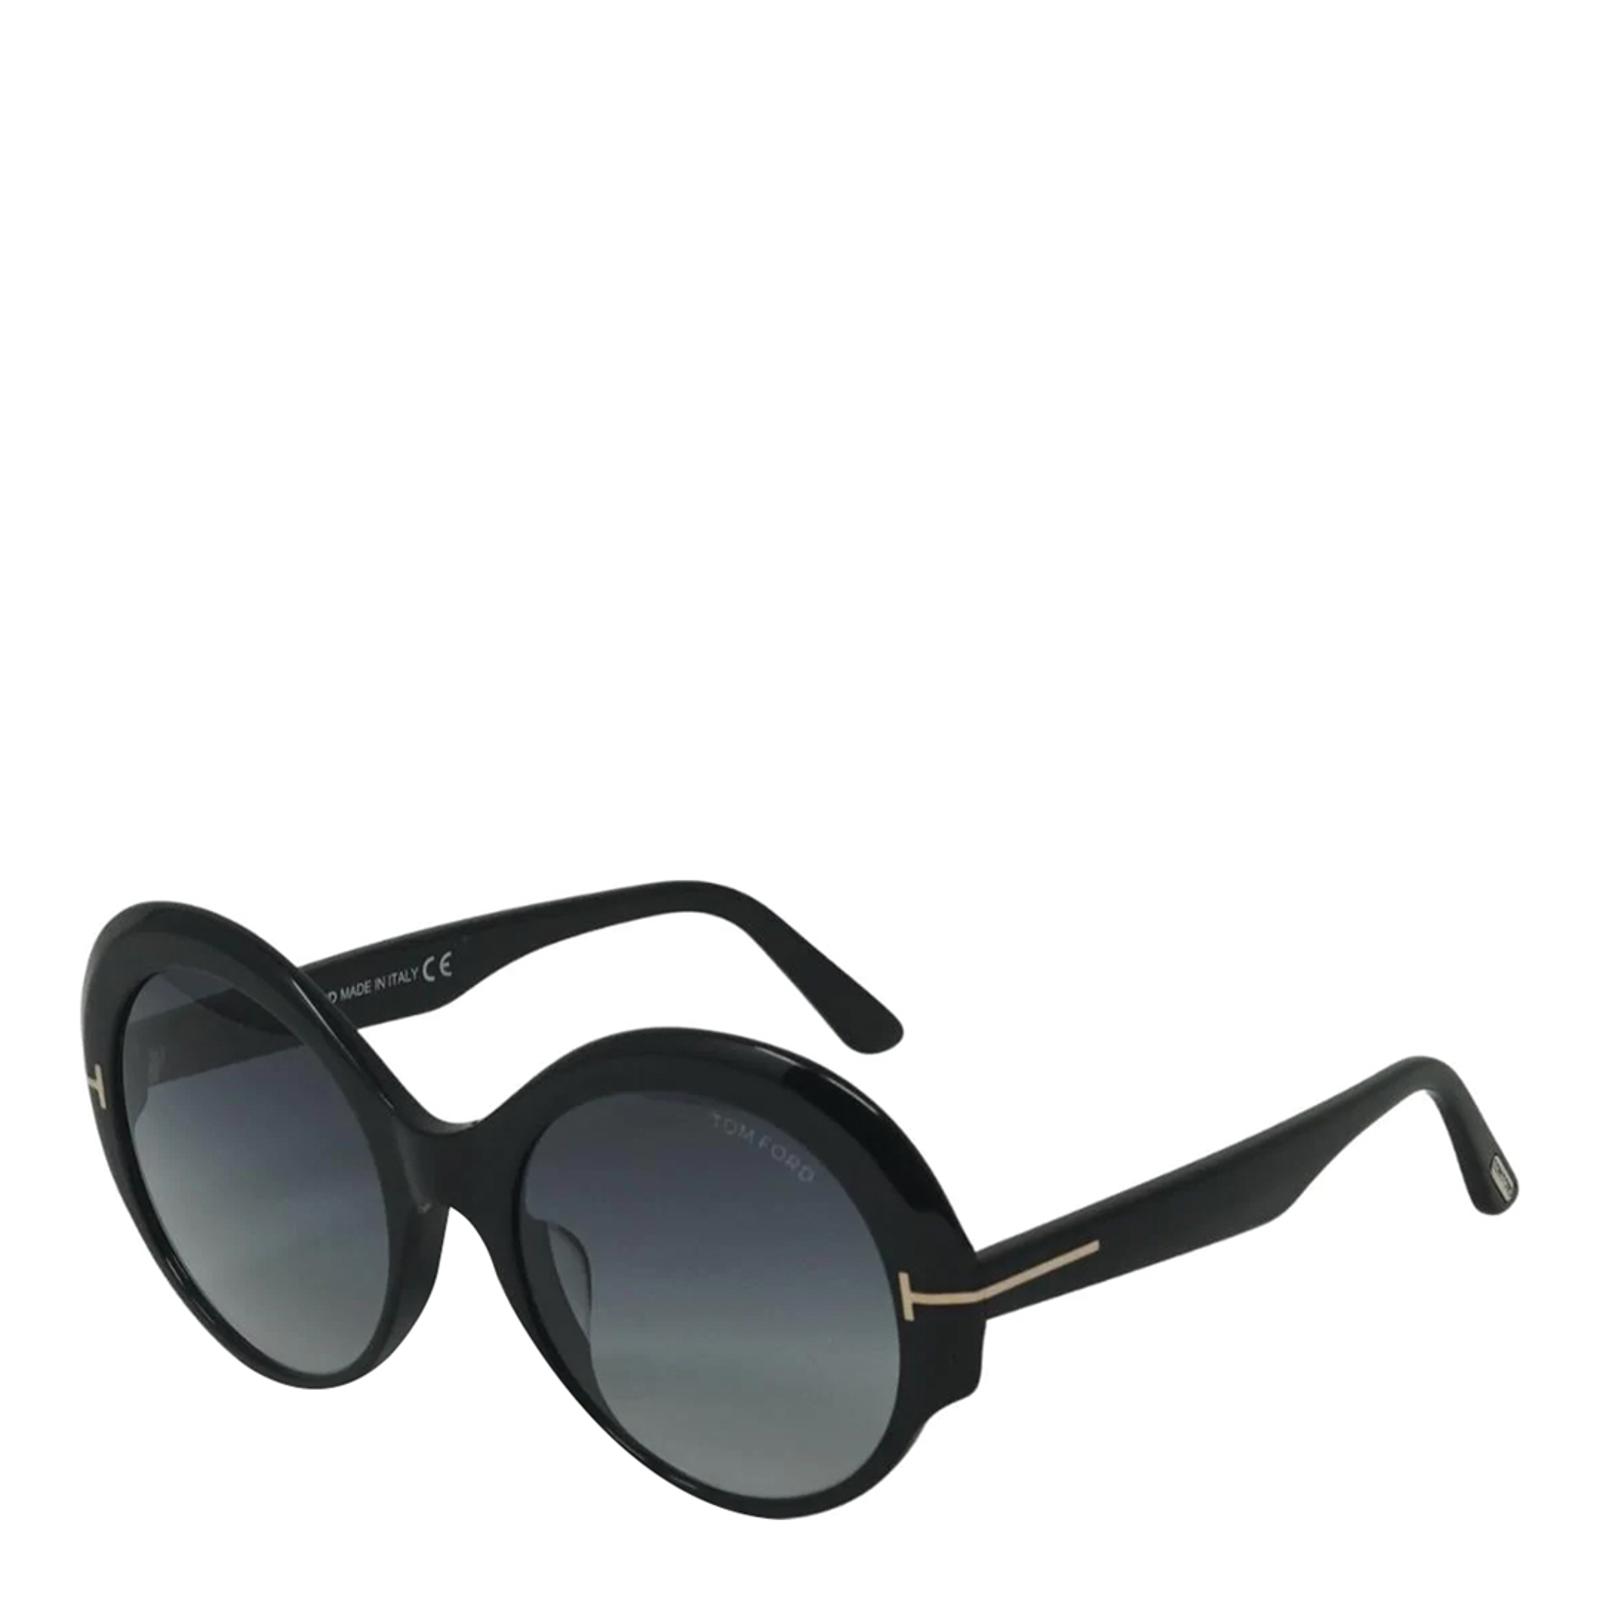 Women's Black Ginger Tom Ford Sunglasses 56mm - BrandAlley